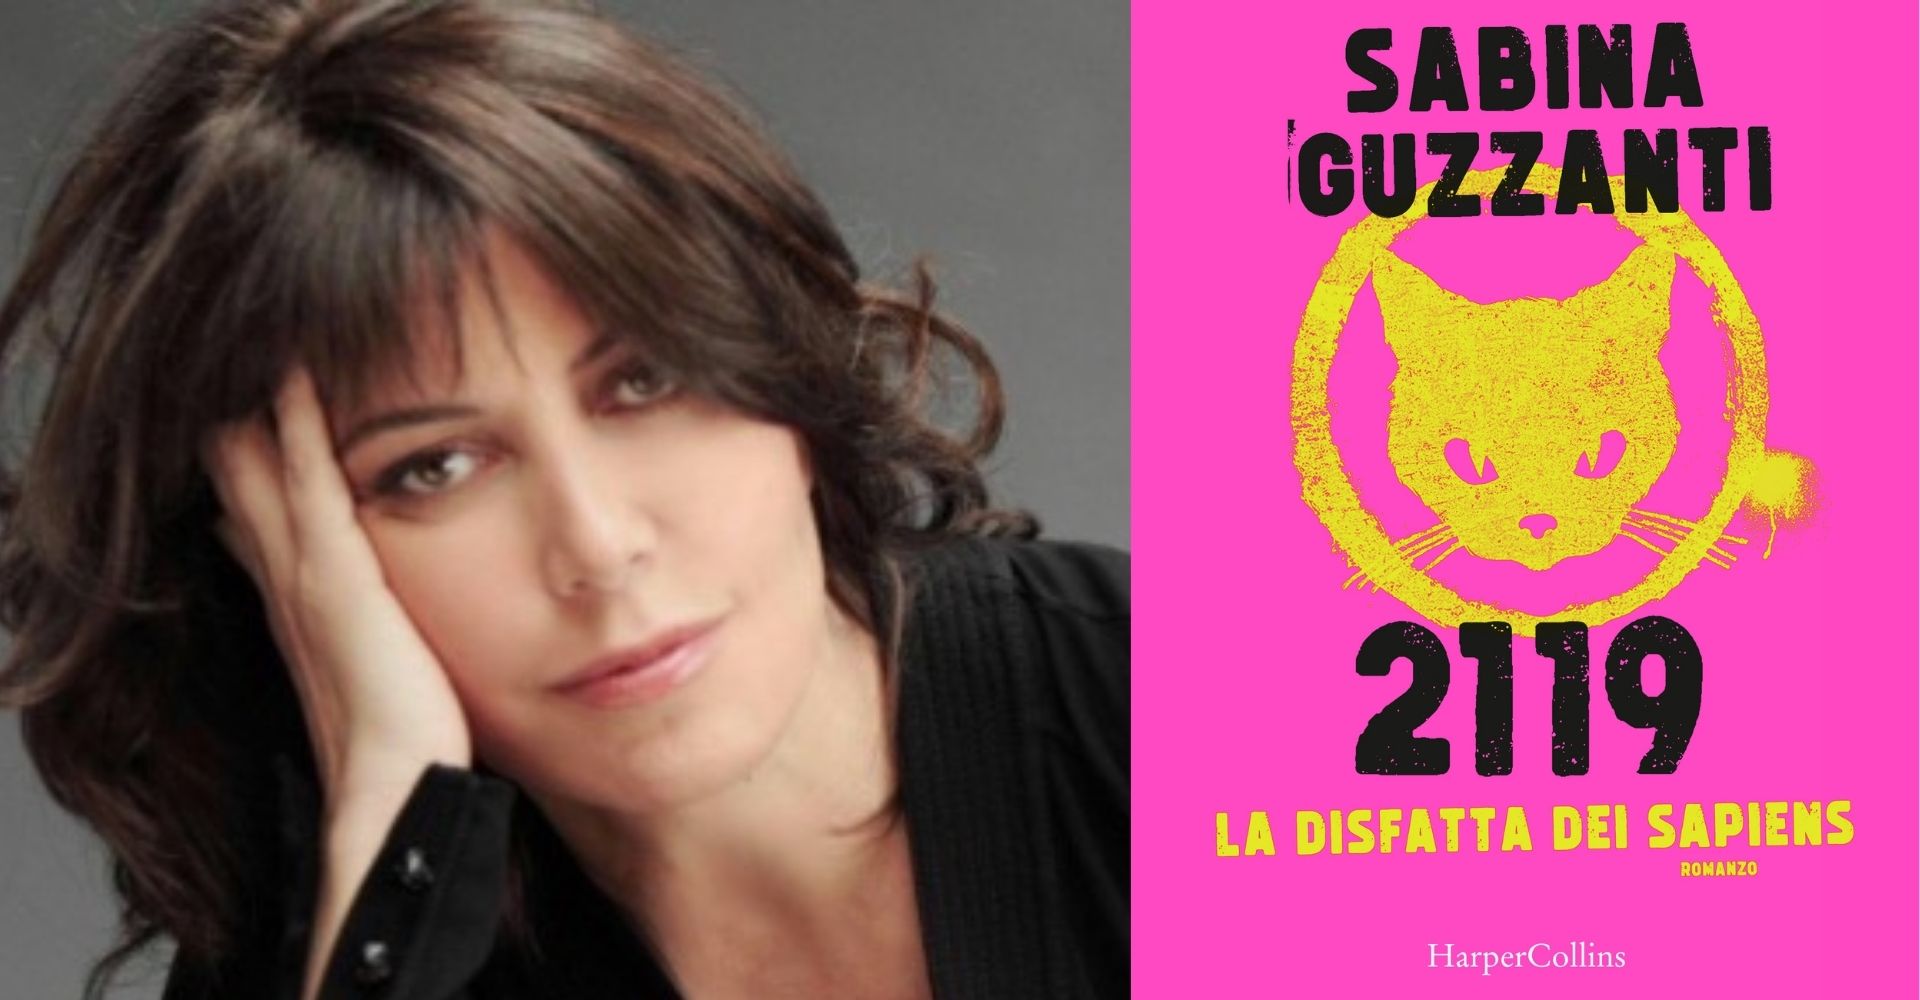 "2119 - La disfatta dei Sapiens": Sabina Guzzanti tra satira, distopia e profezie